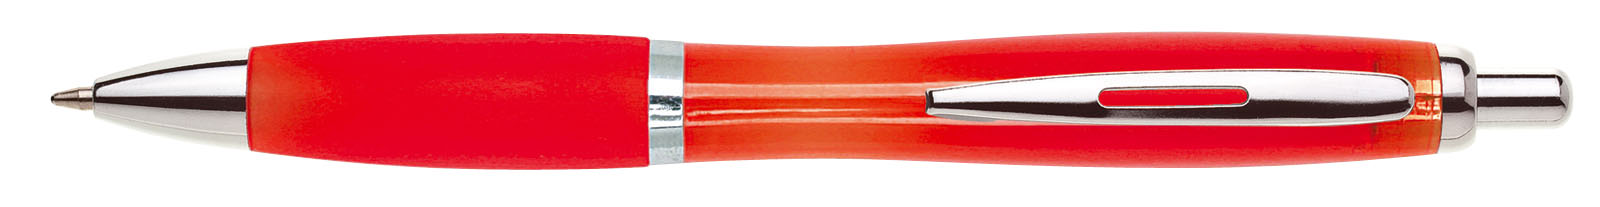 Propiska plast ULTA, červená